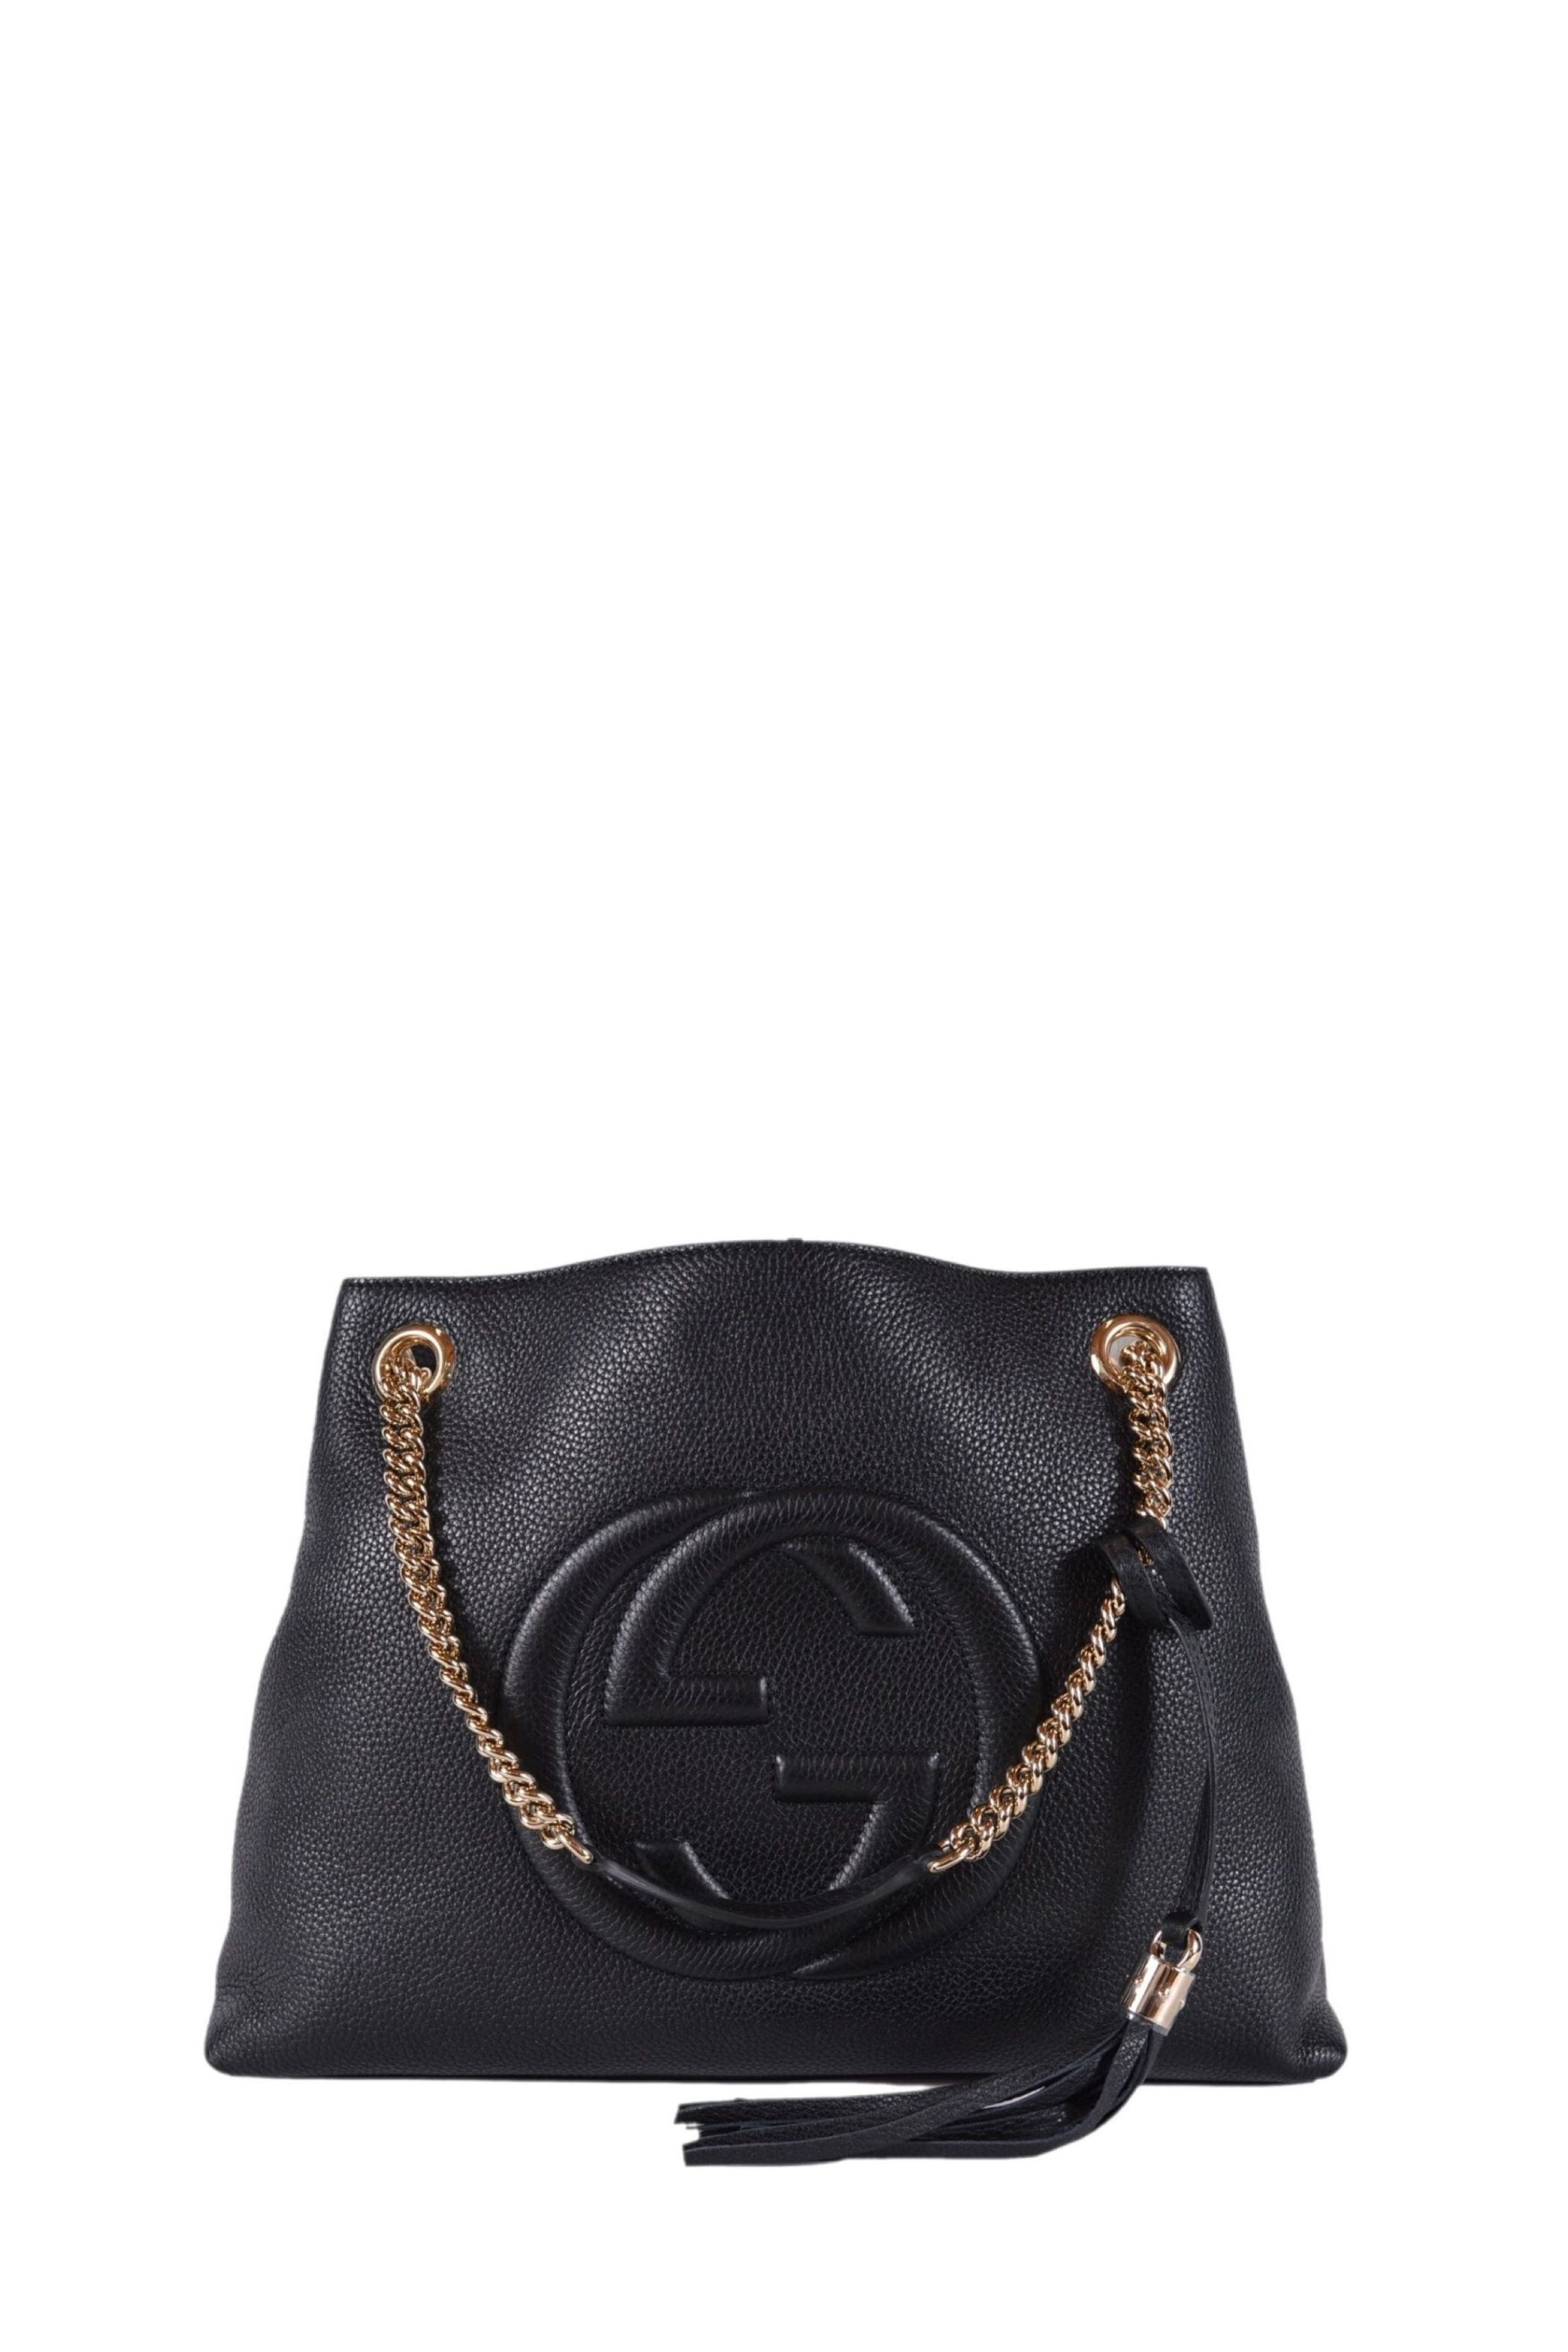 Soho GG shoulder bag in Black Leather